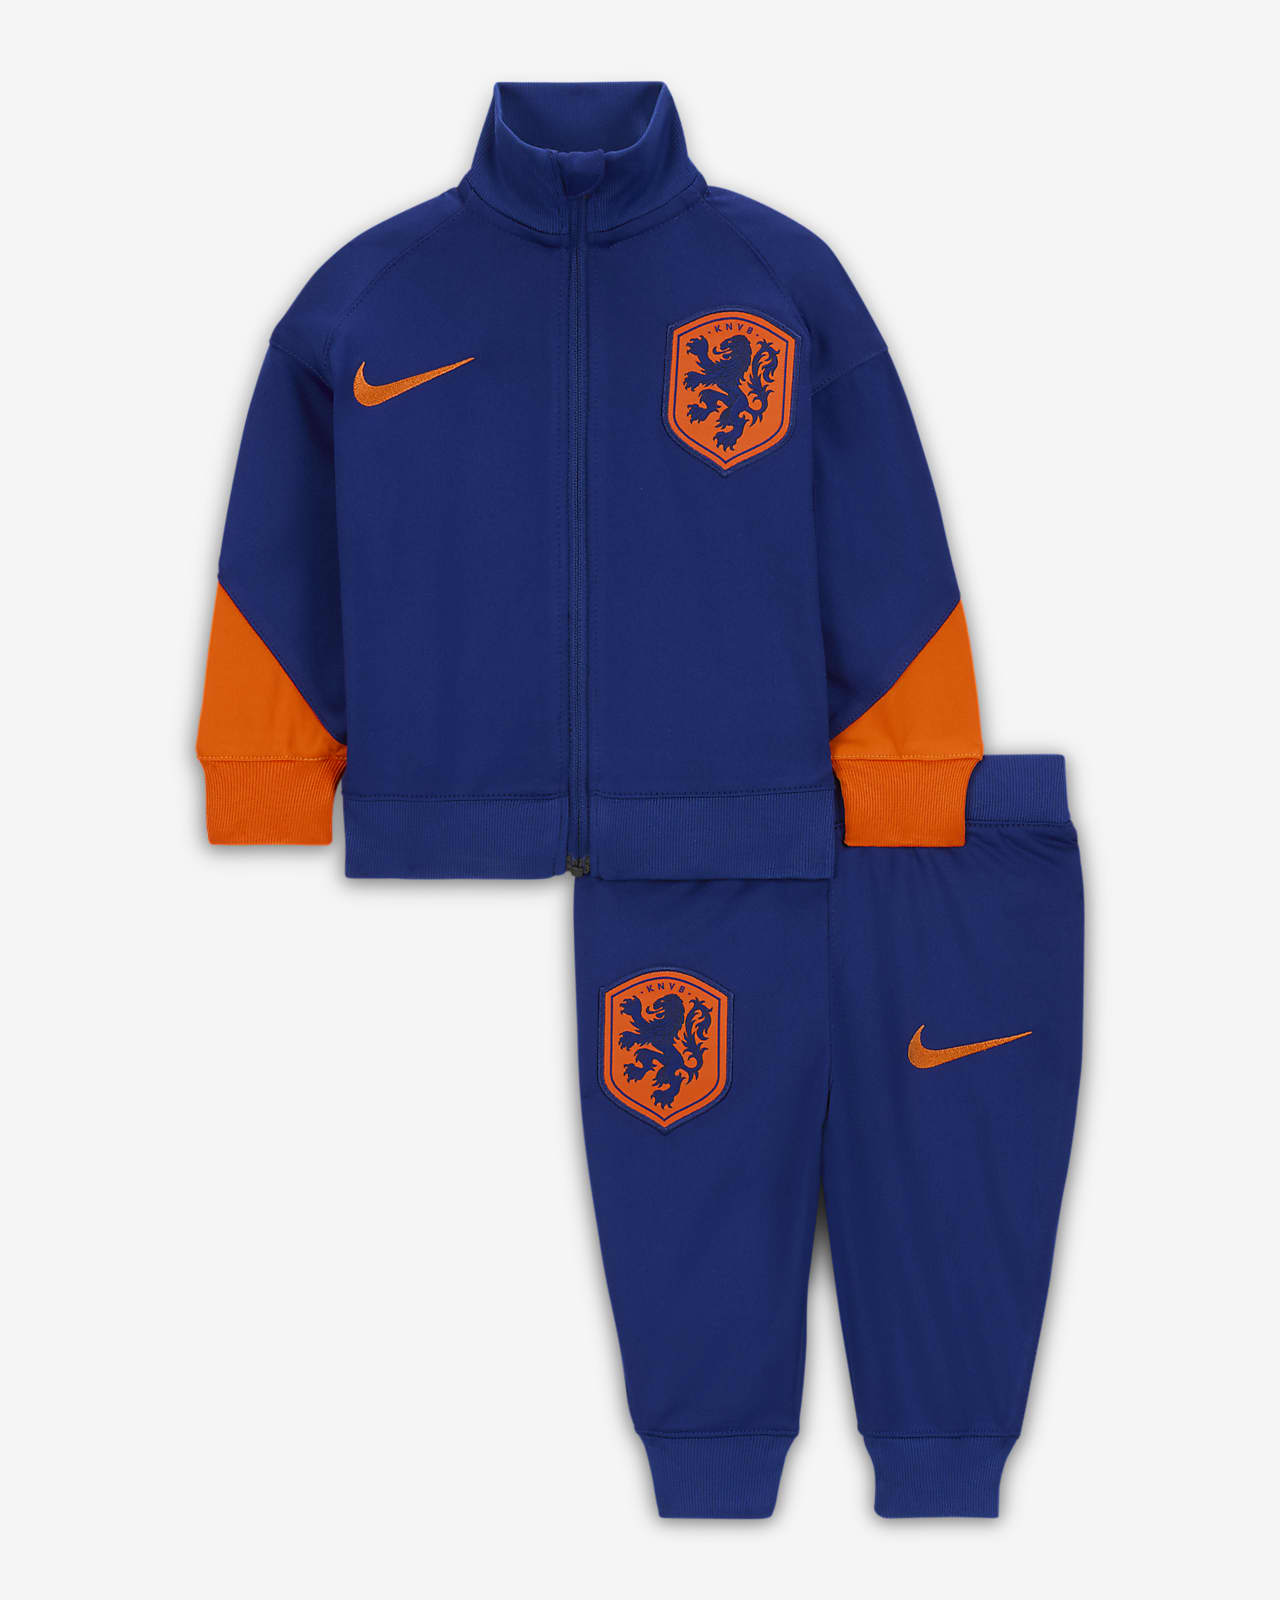 Ποδοσφαιρική πλεκτή φόρμα Nike Dri-FIT Κάτω Χώρες Strike για βρέφη και νήπια